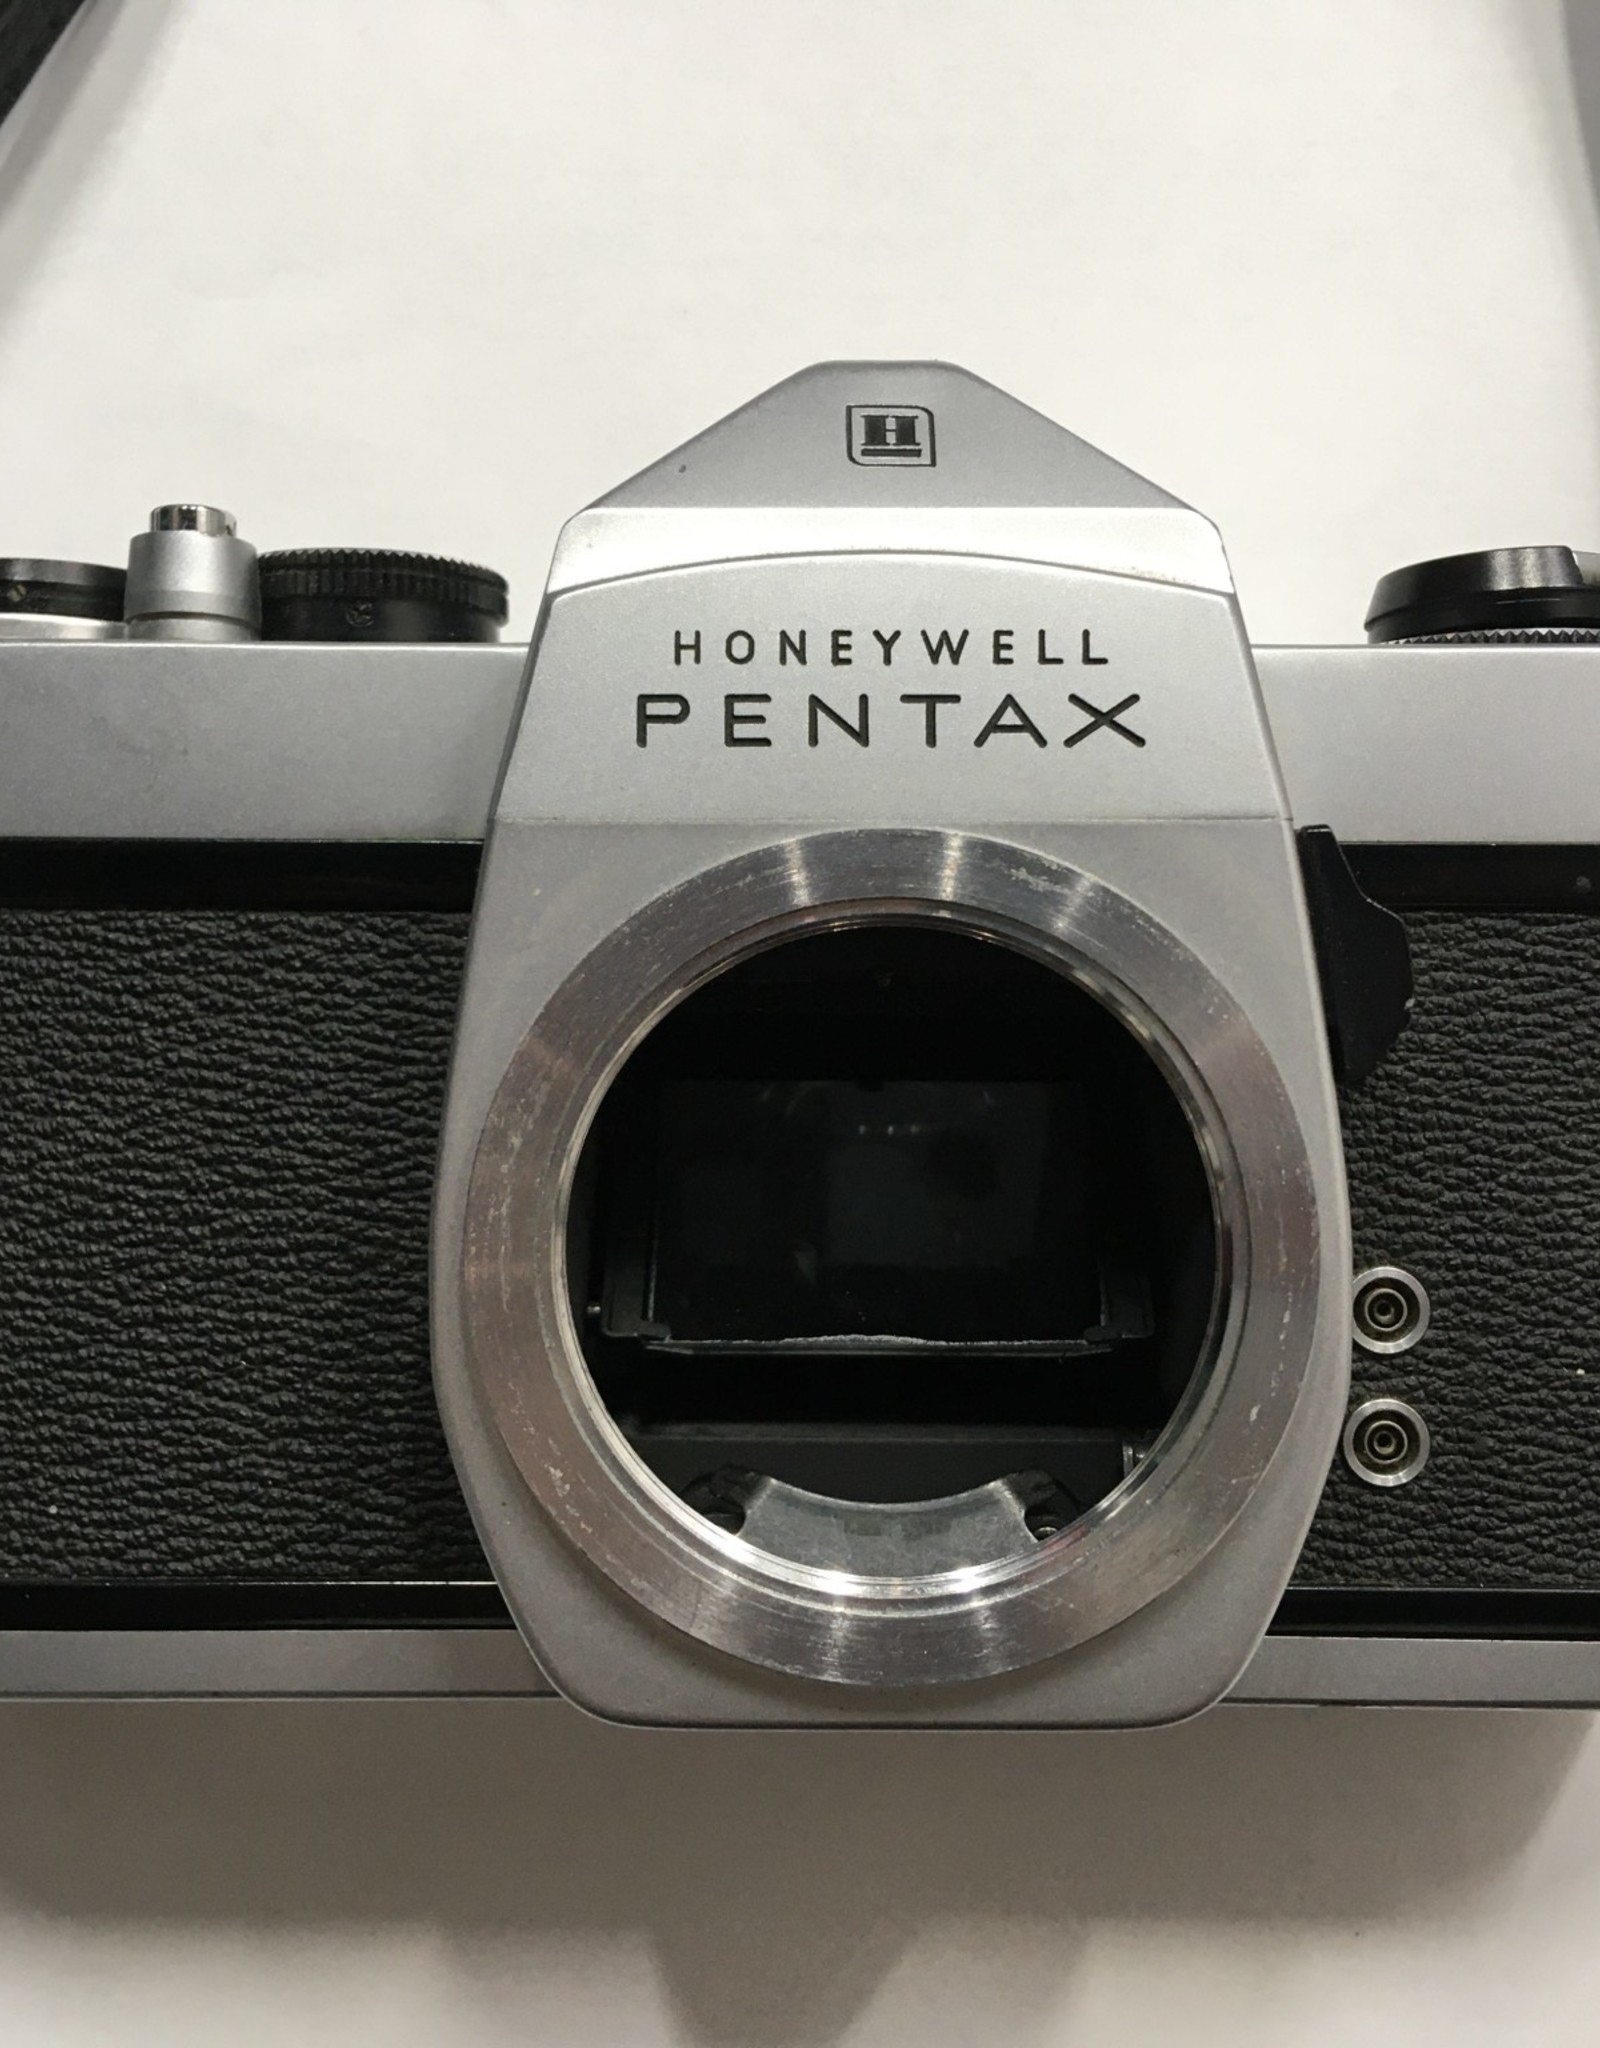 Honeywell / Pentax Honeywell Pentax SP1000 w/ Asahi Super-Takumar 50mm f/1.4 lens